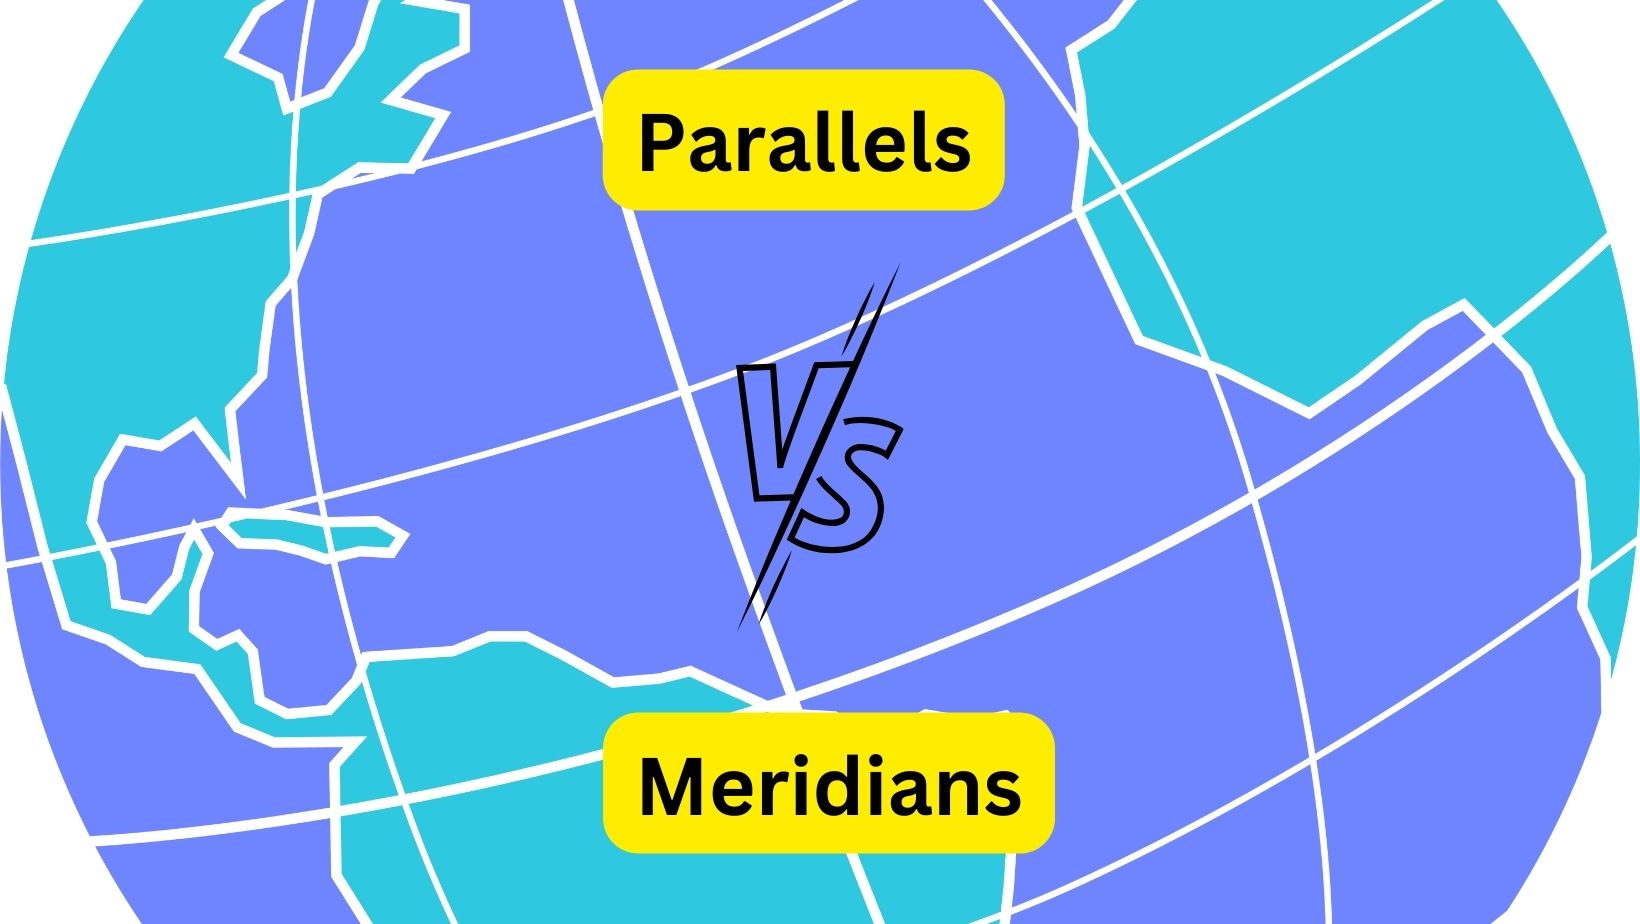 Parallels vs Meridians